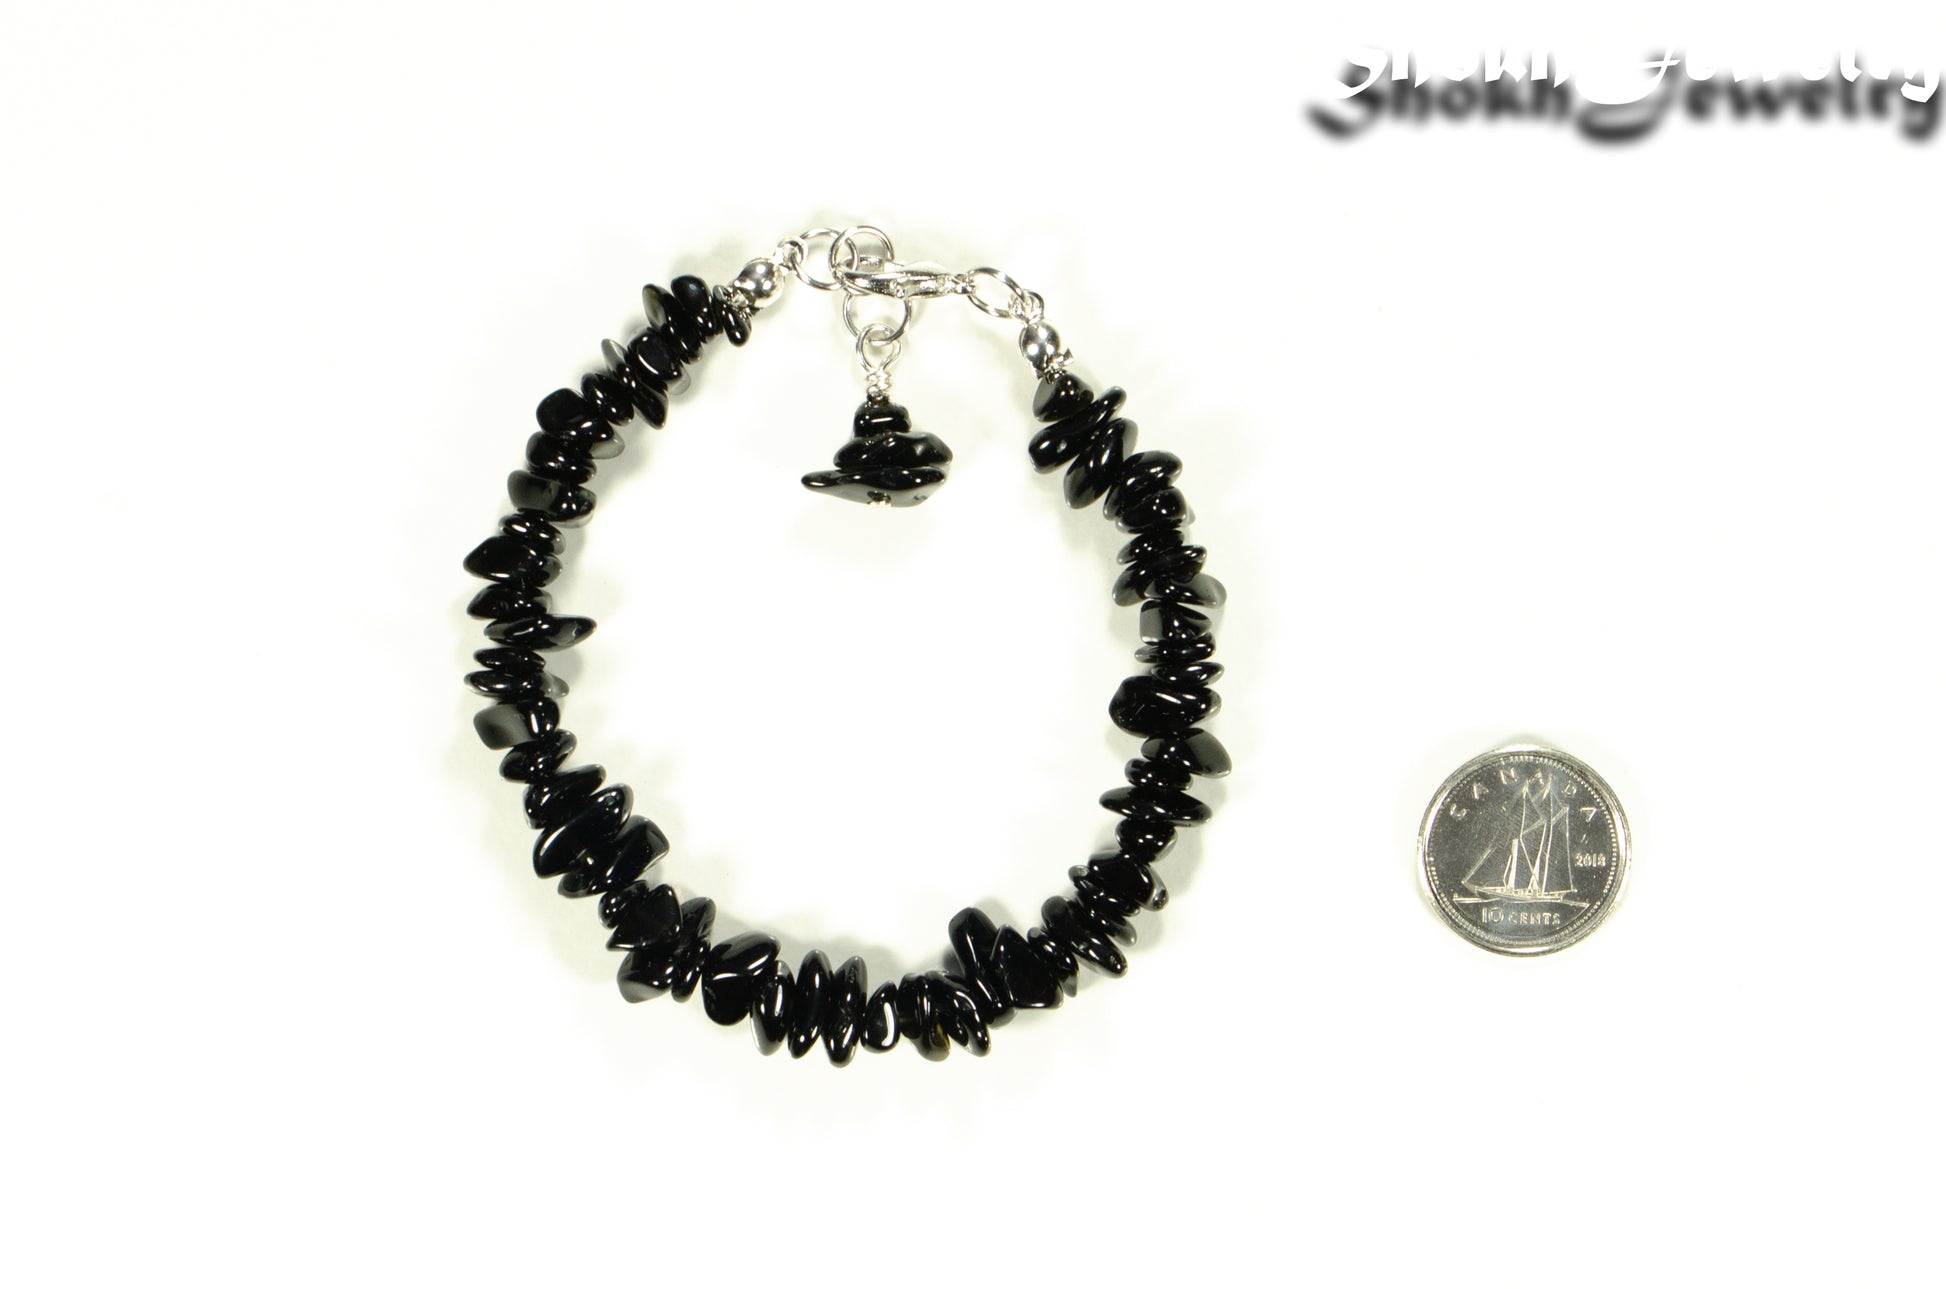 Natural Black Obsidian Crystal Chip Bracelet beside a dime.